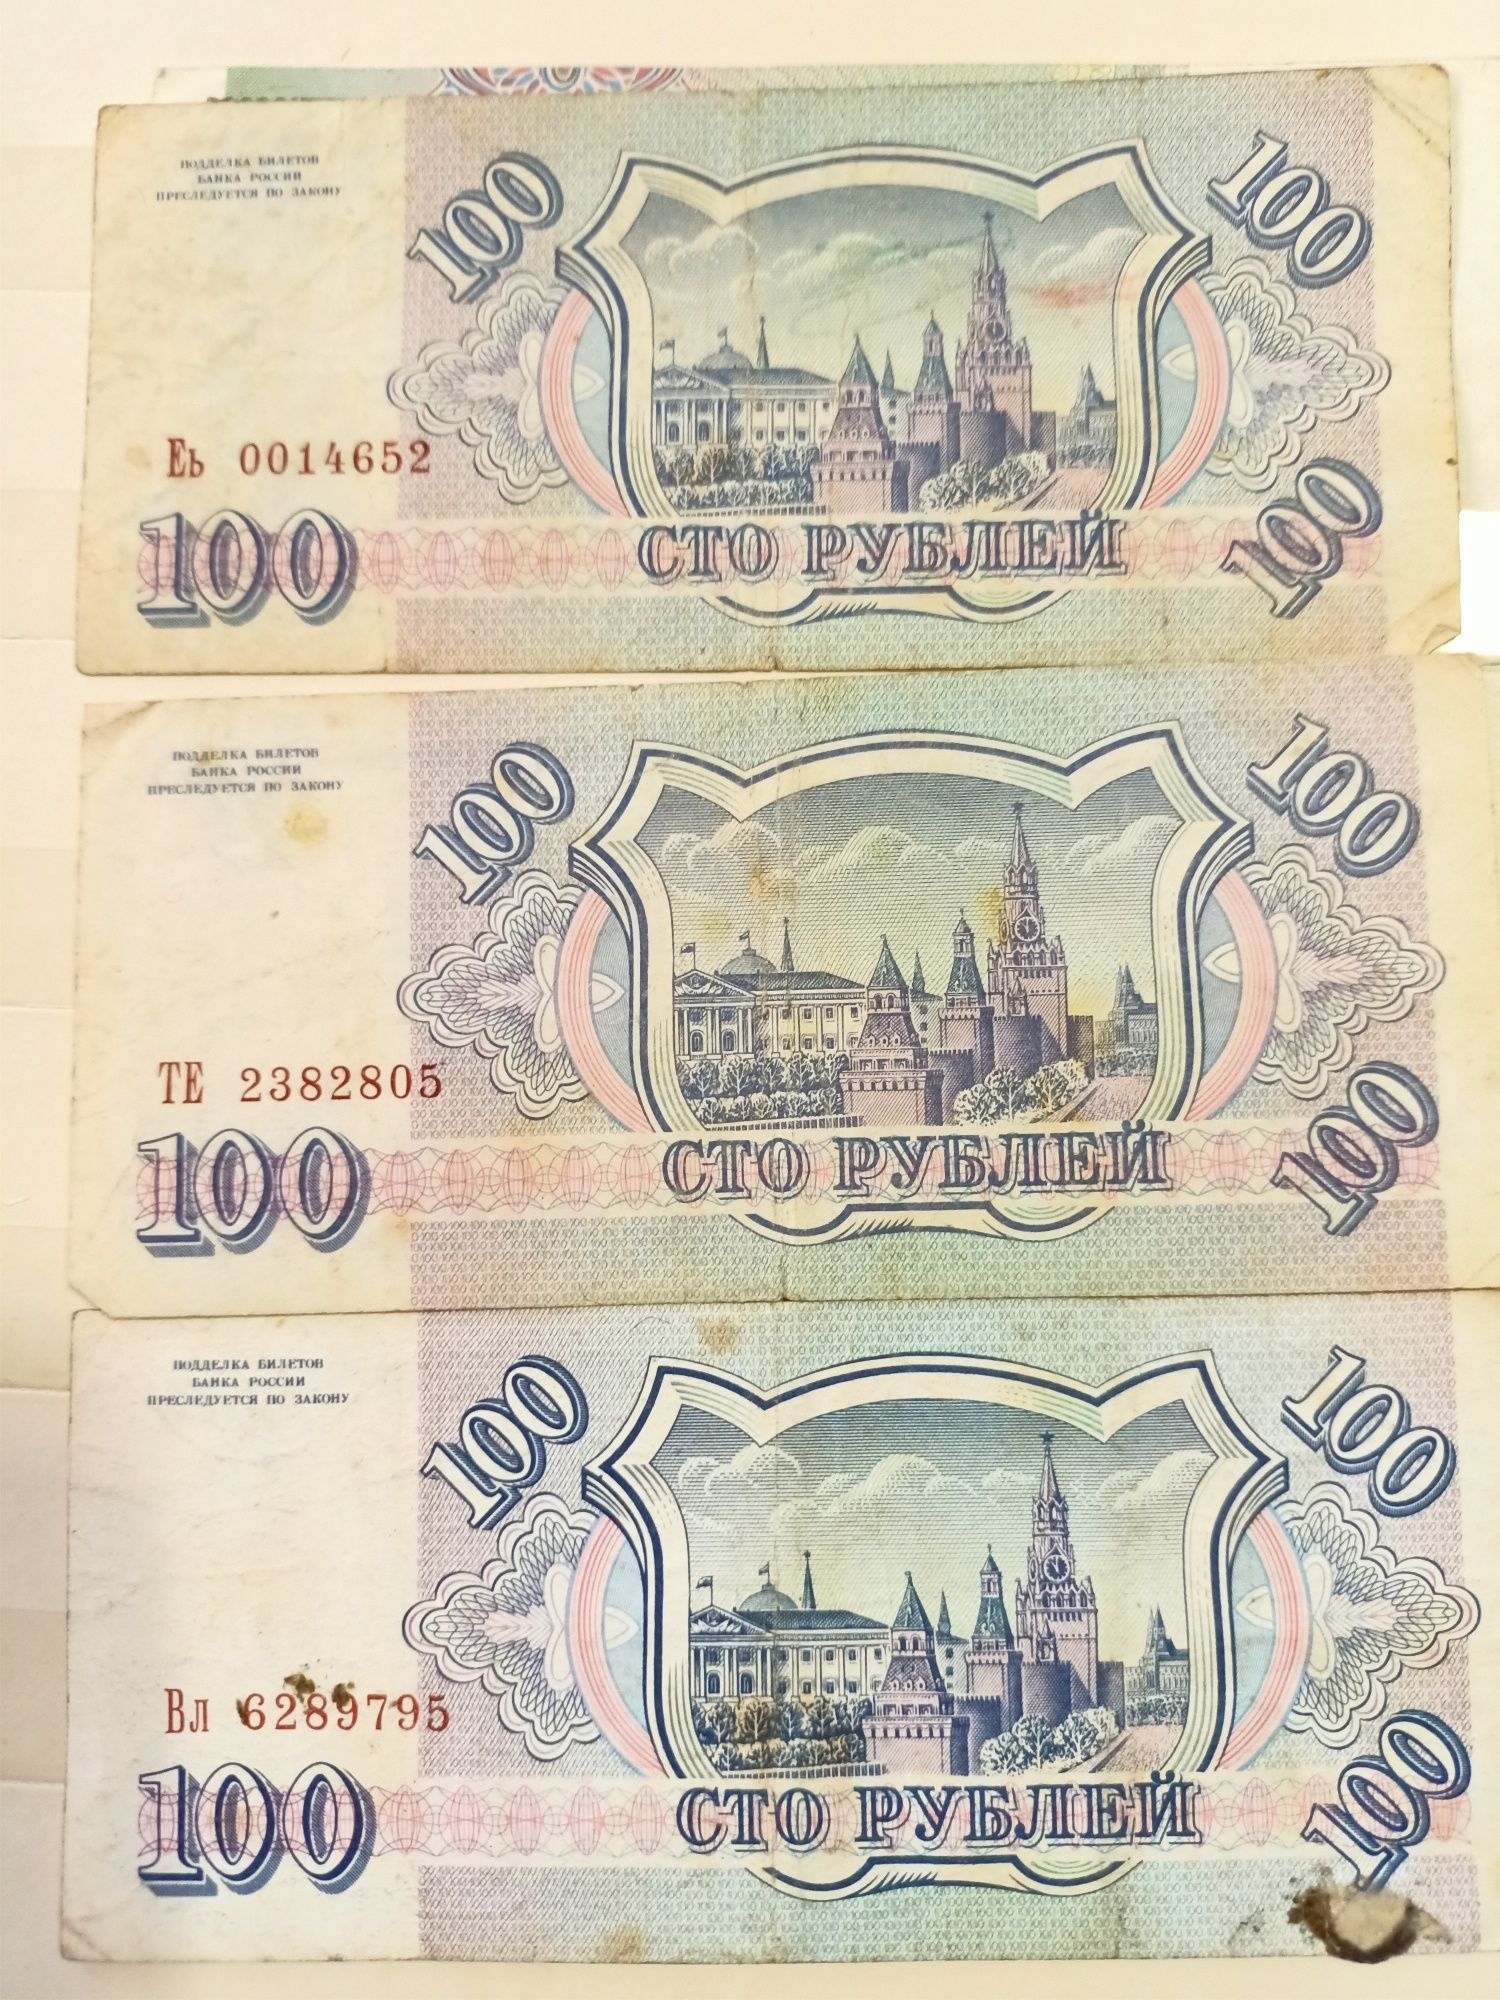 Купюры России две 500 рублей и три 100 рублей с 1993 года.